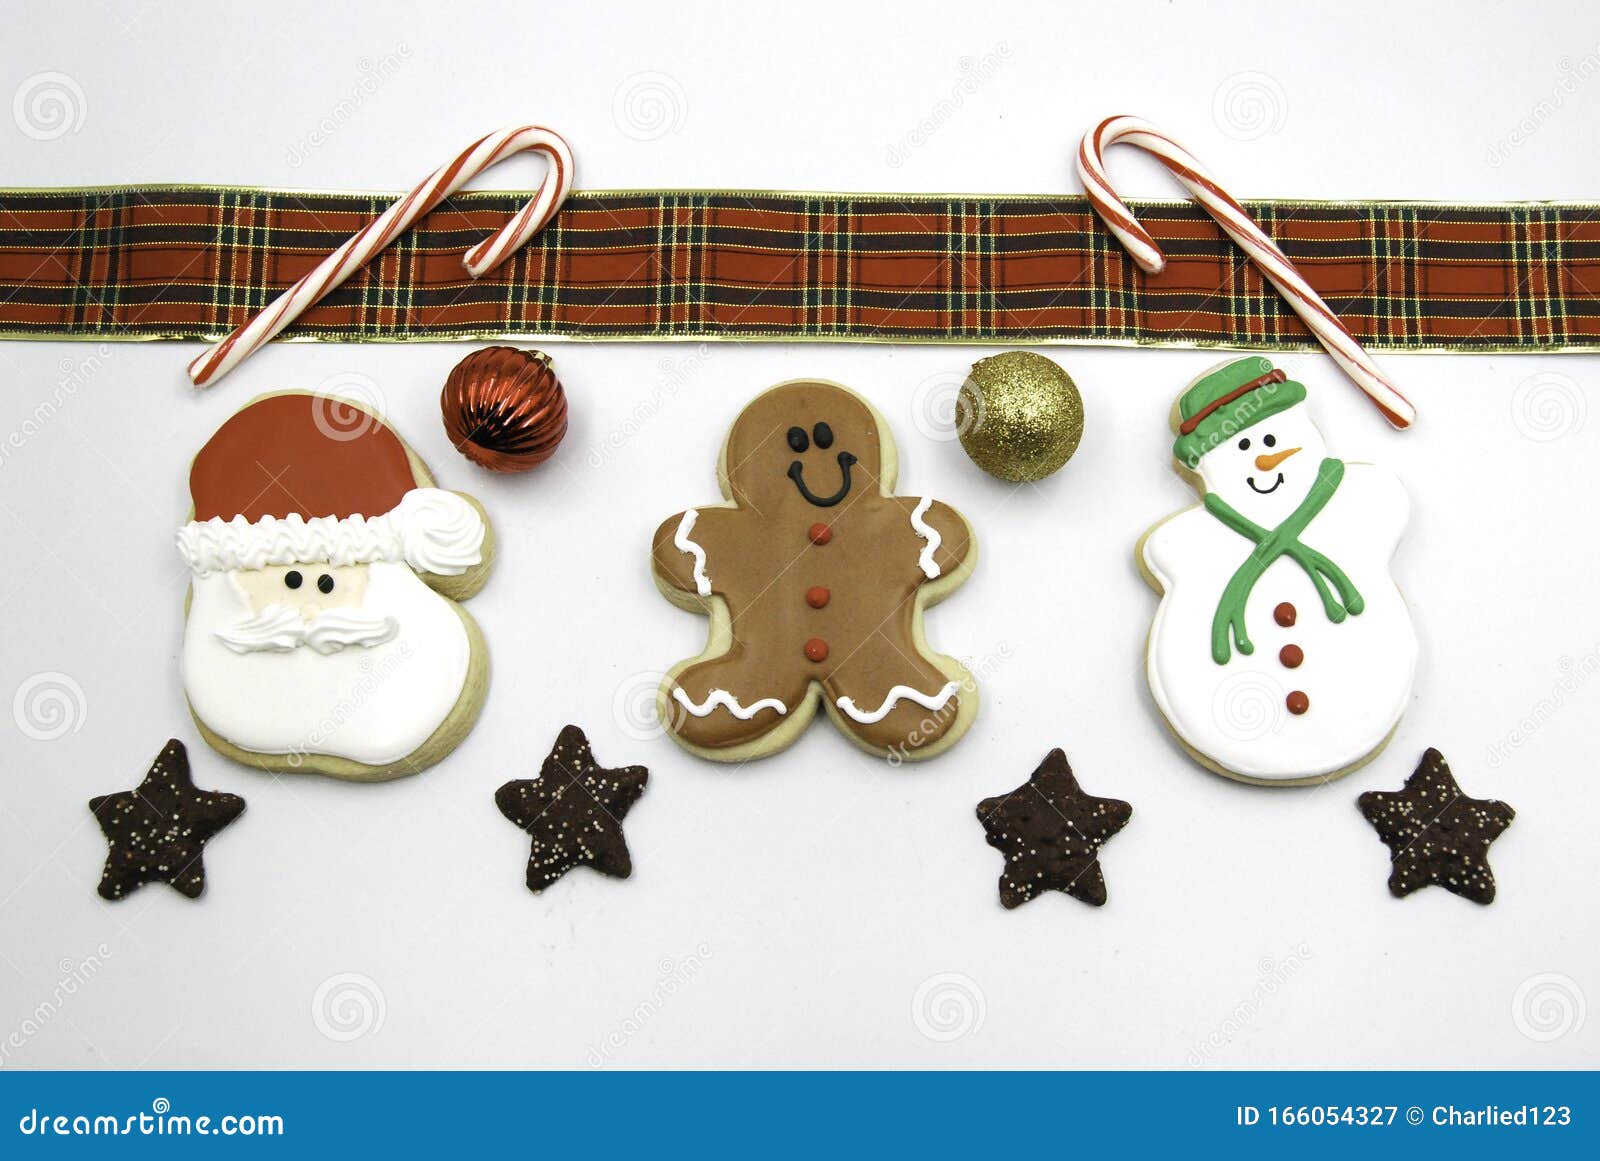 Cookie Flat Lay De Natal Decorado Isolado Com Canes Doces E Bolas De Natal  Imagem de Stock - Imagem de bolinhos, doce: 166054327